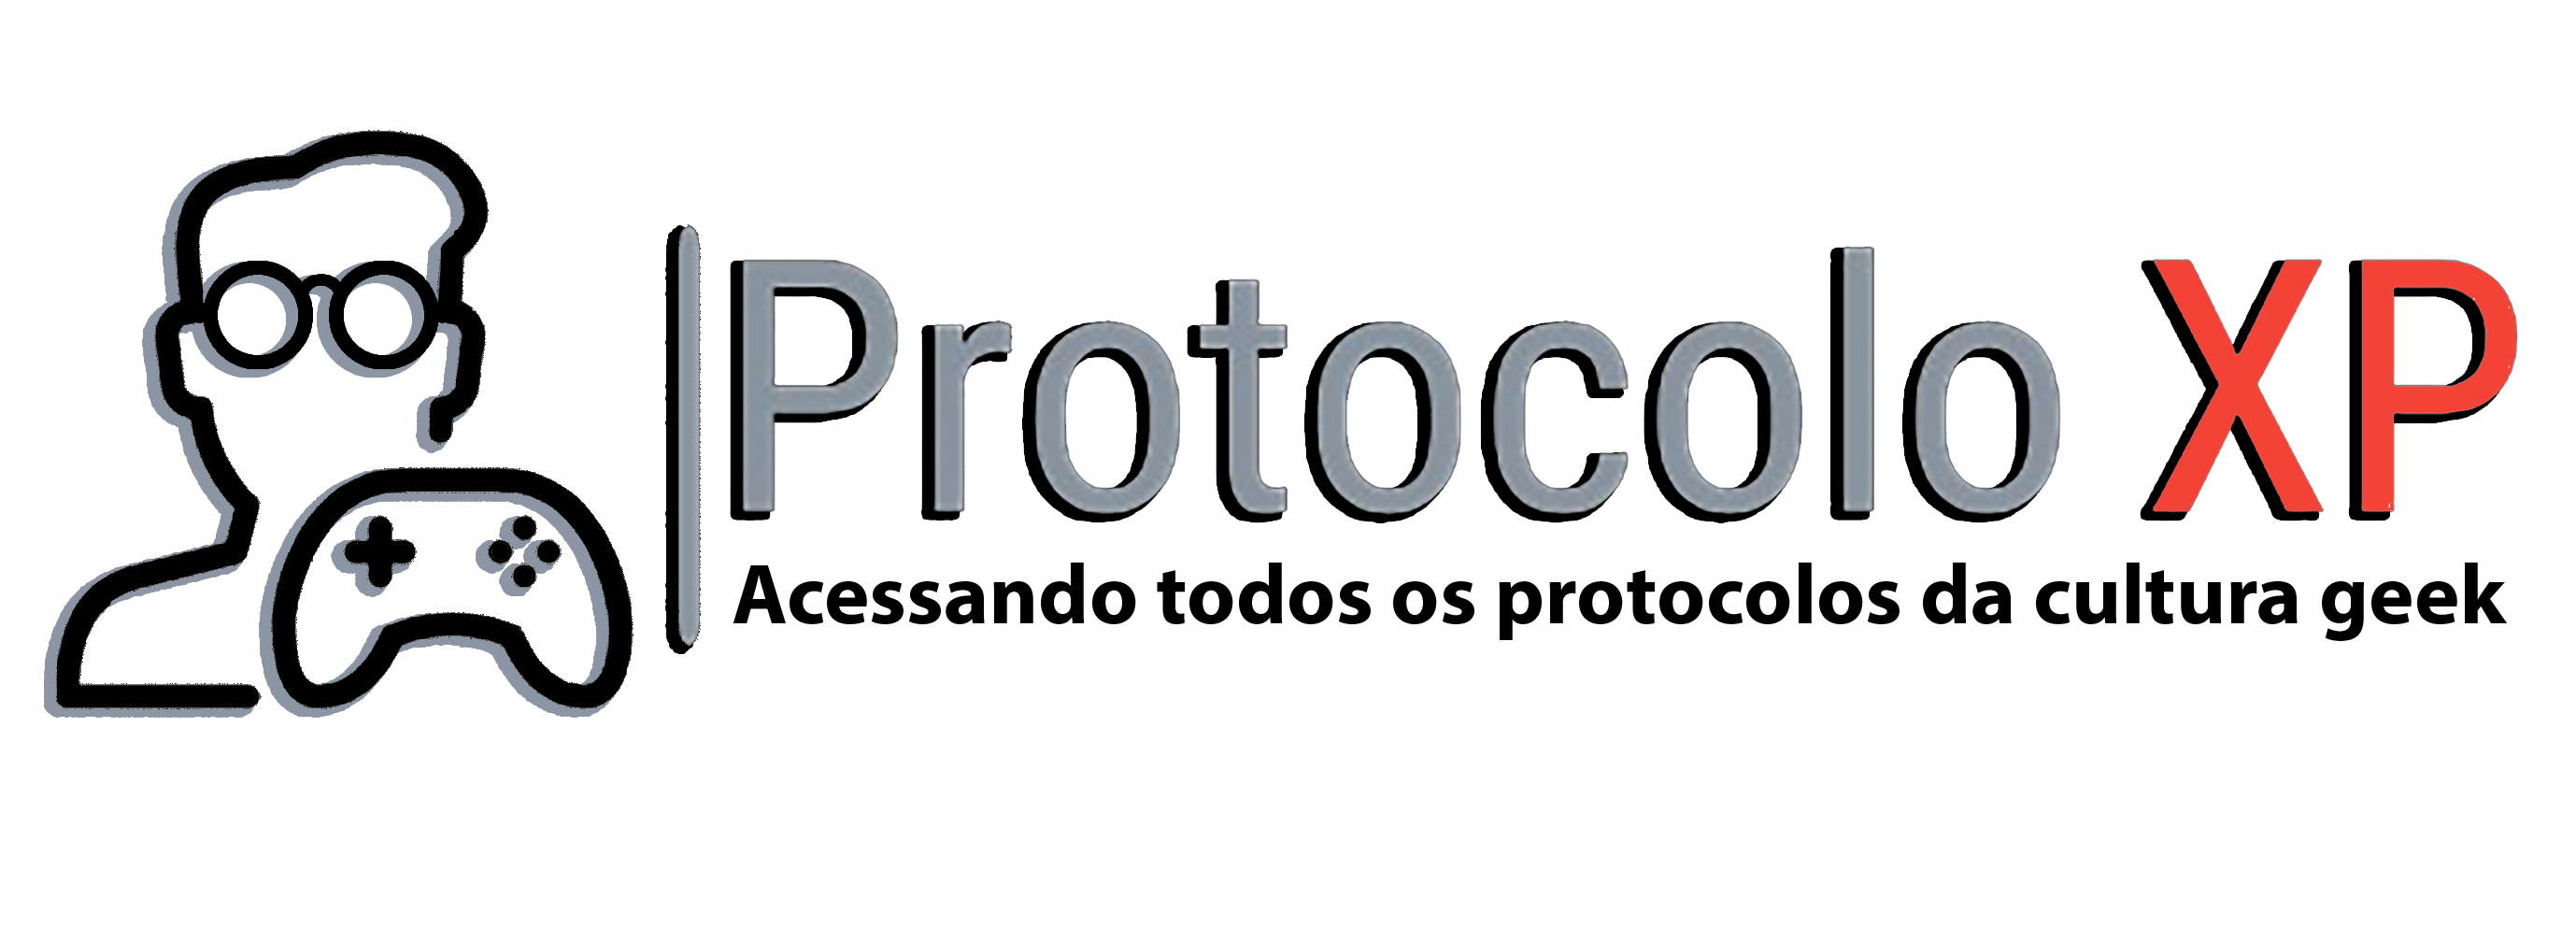 Protocolo XP